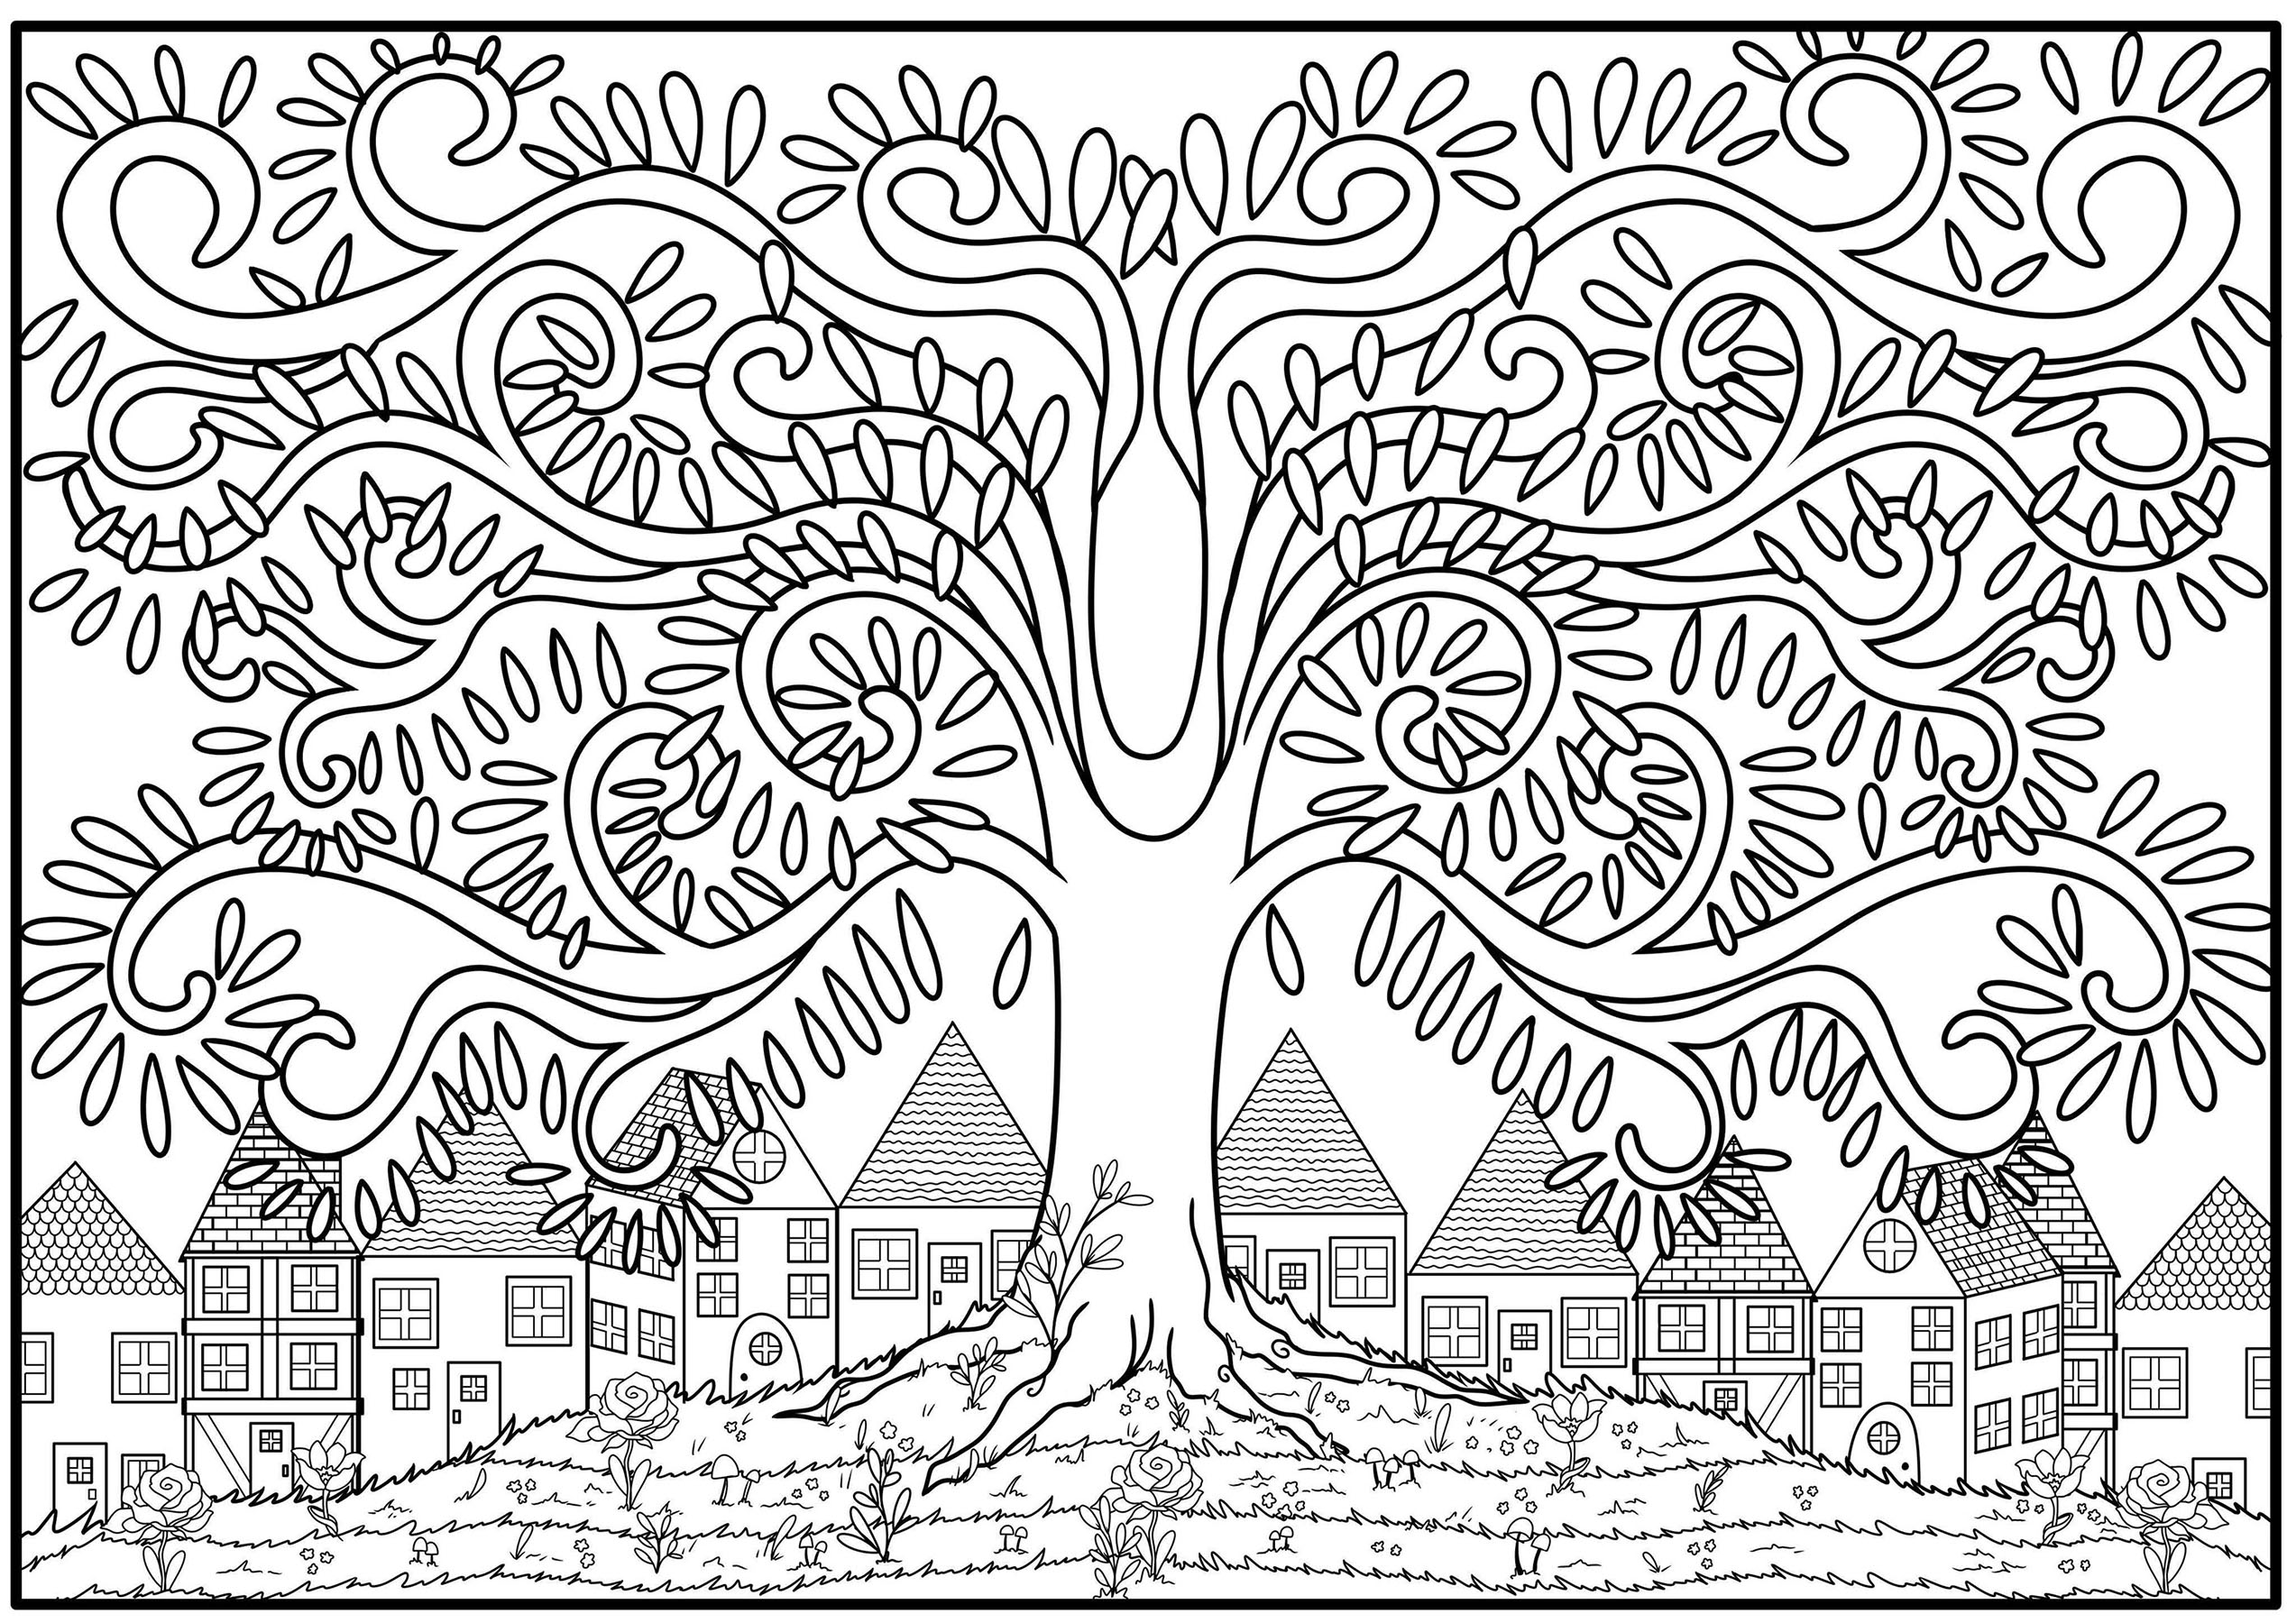 Página para colorir de uma árvore com ramos em forma de arabesco, no cimo de uma colina florida com casas ao fundo, Artista : Océane D